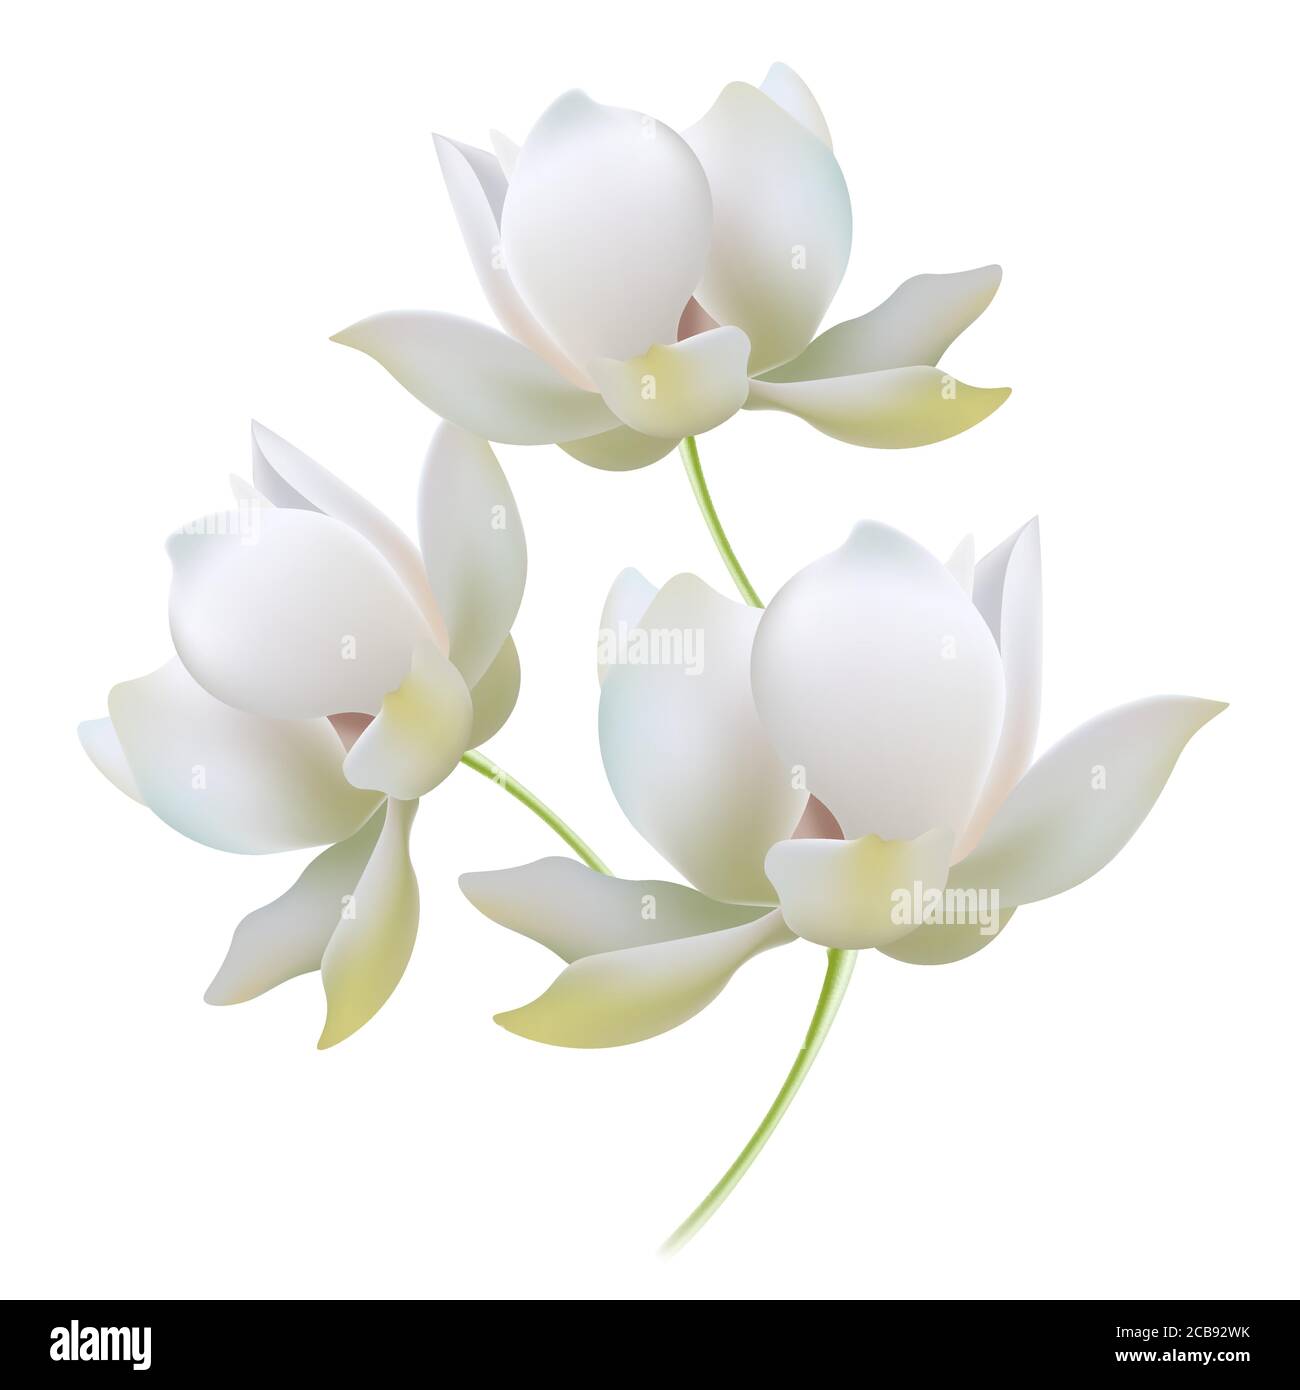 Weiße Goldlilien offene Knospen realistische Vektor Illustration Komposition. Blüten mit Stiel, Blick von der Seite, verschiedene Winkel zu Auge. Zart leuchtende Blütenblätter, feinster Farbübergang Stock Vektor